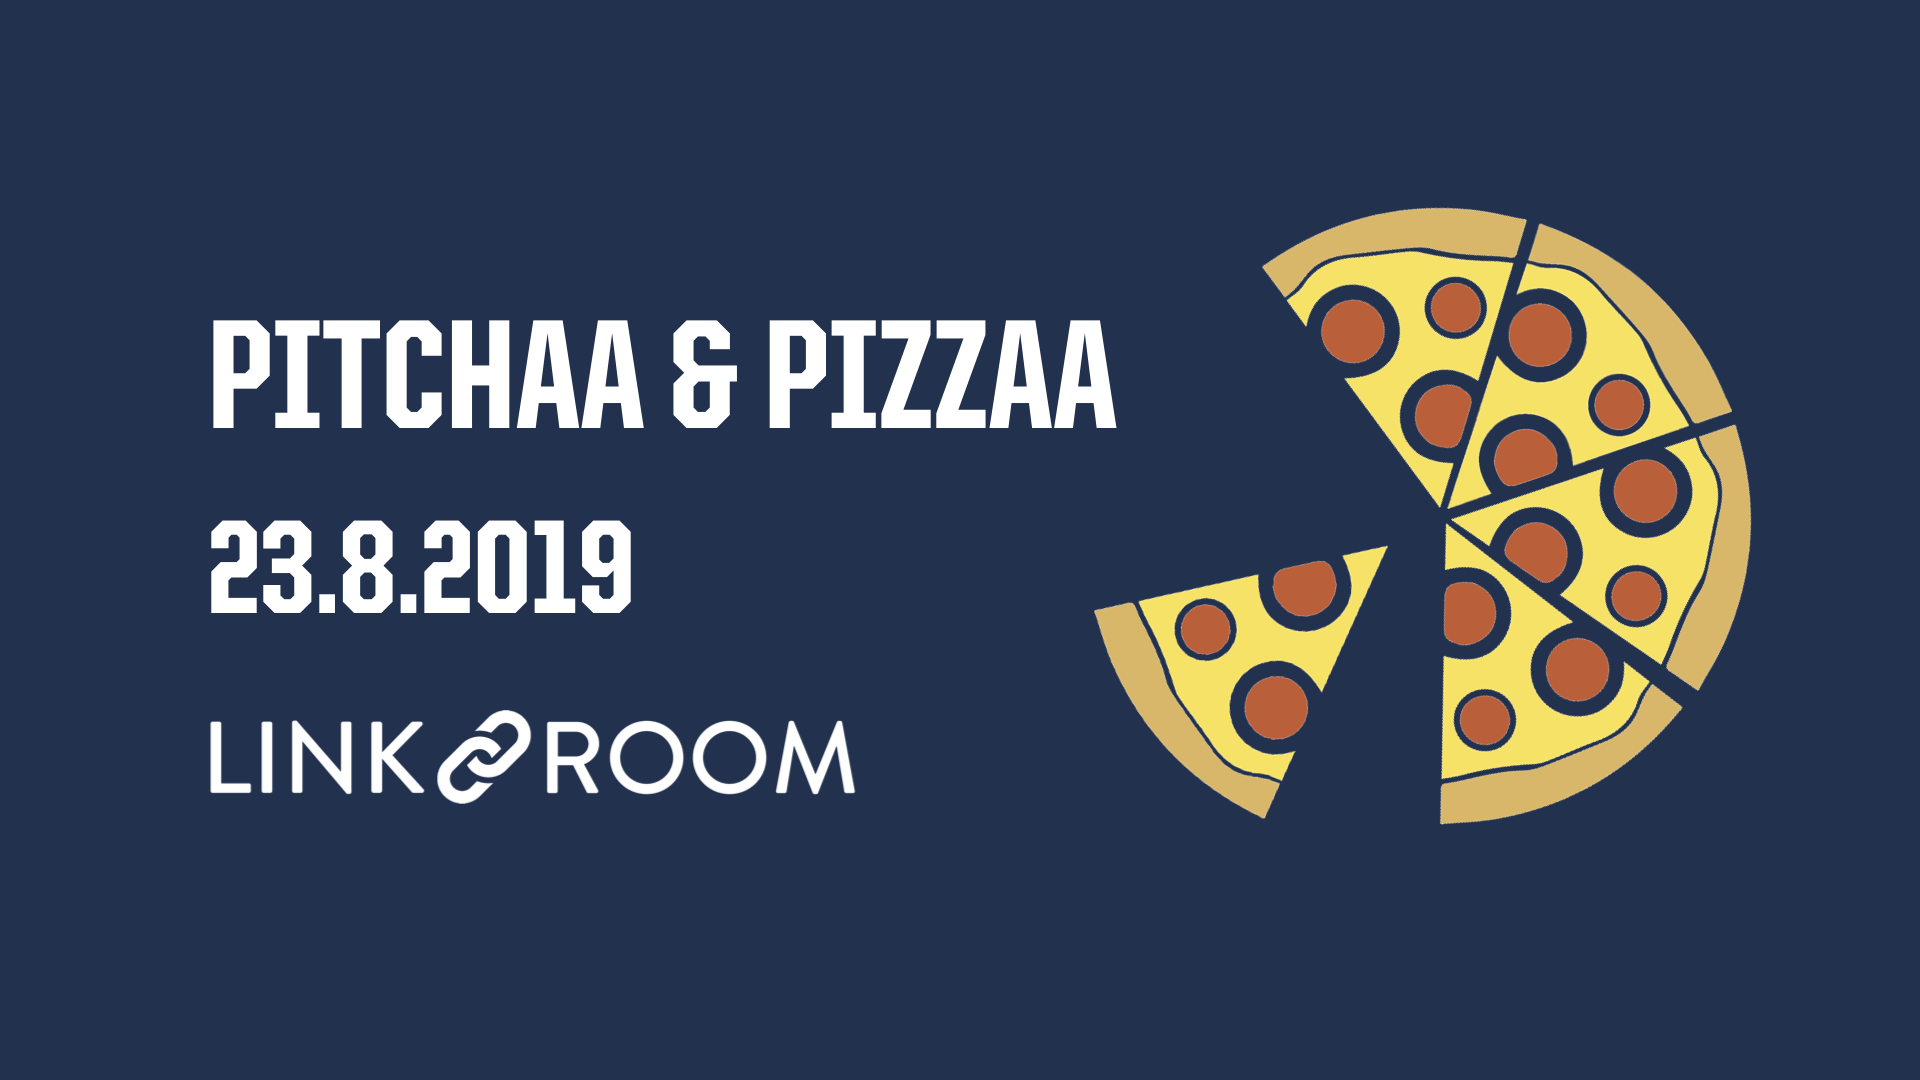 23.8.2019 – Pitchaa & Pizzaa (Hml)